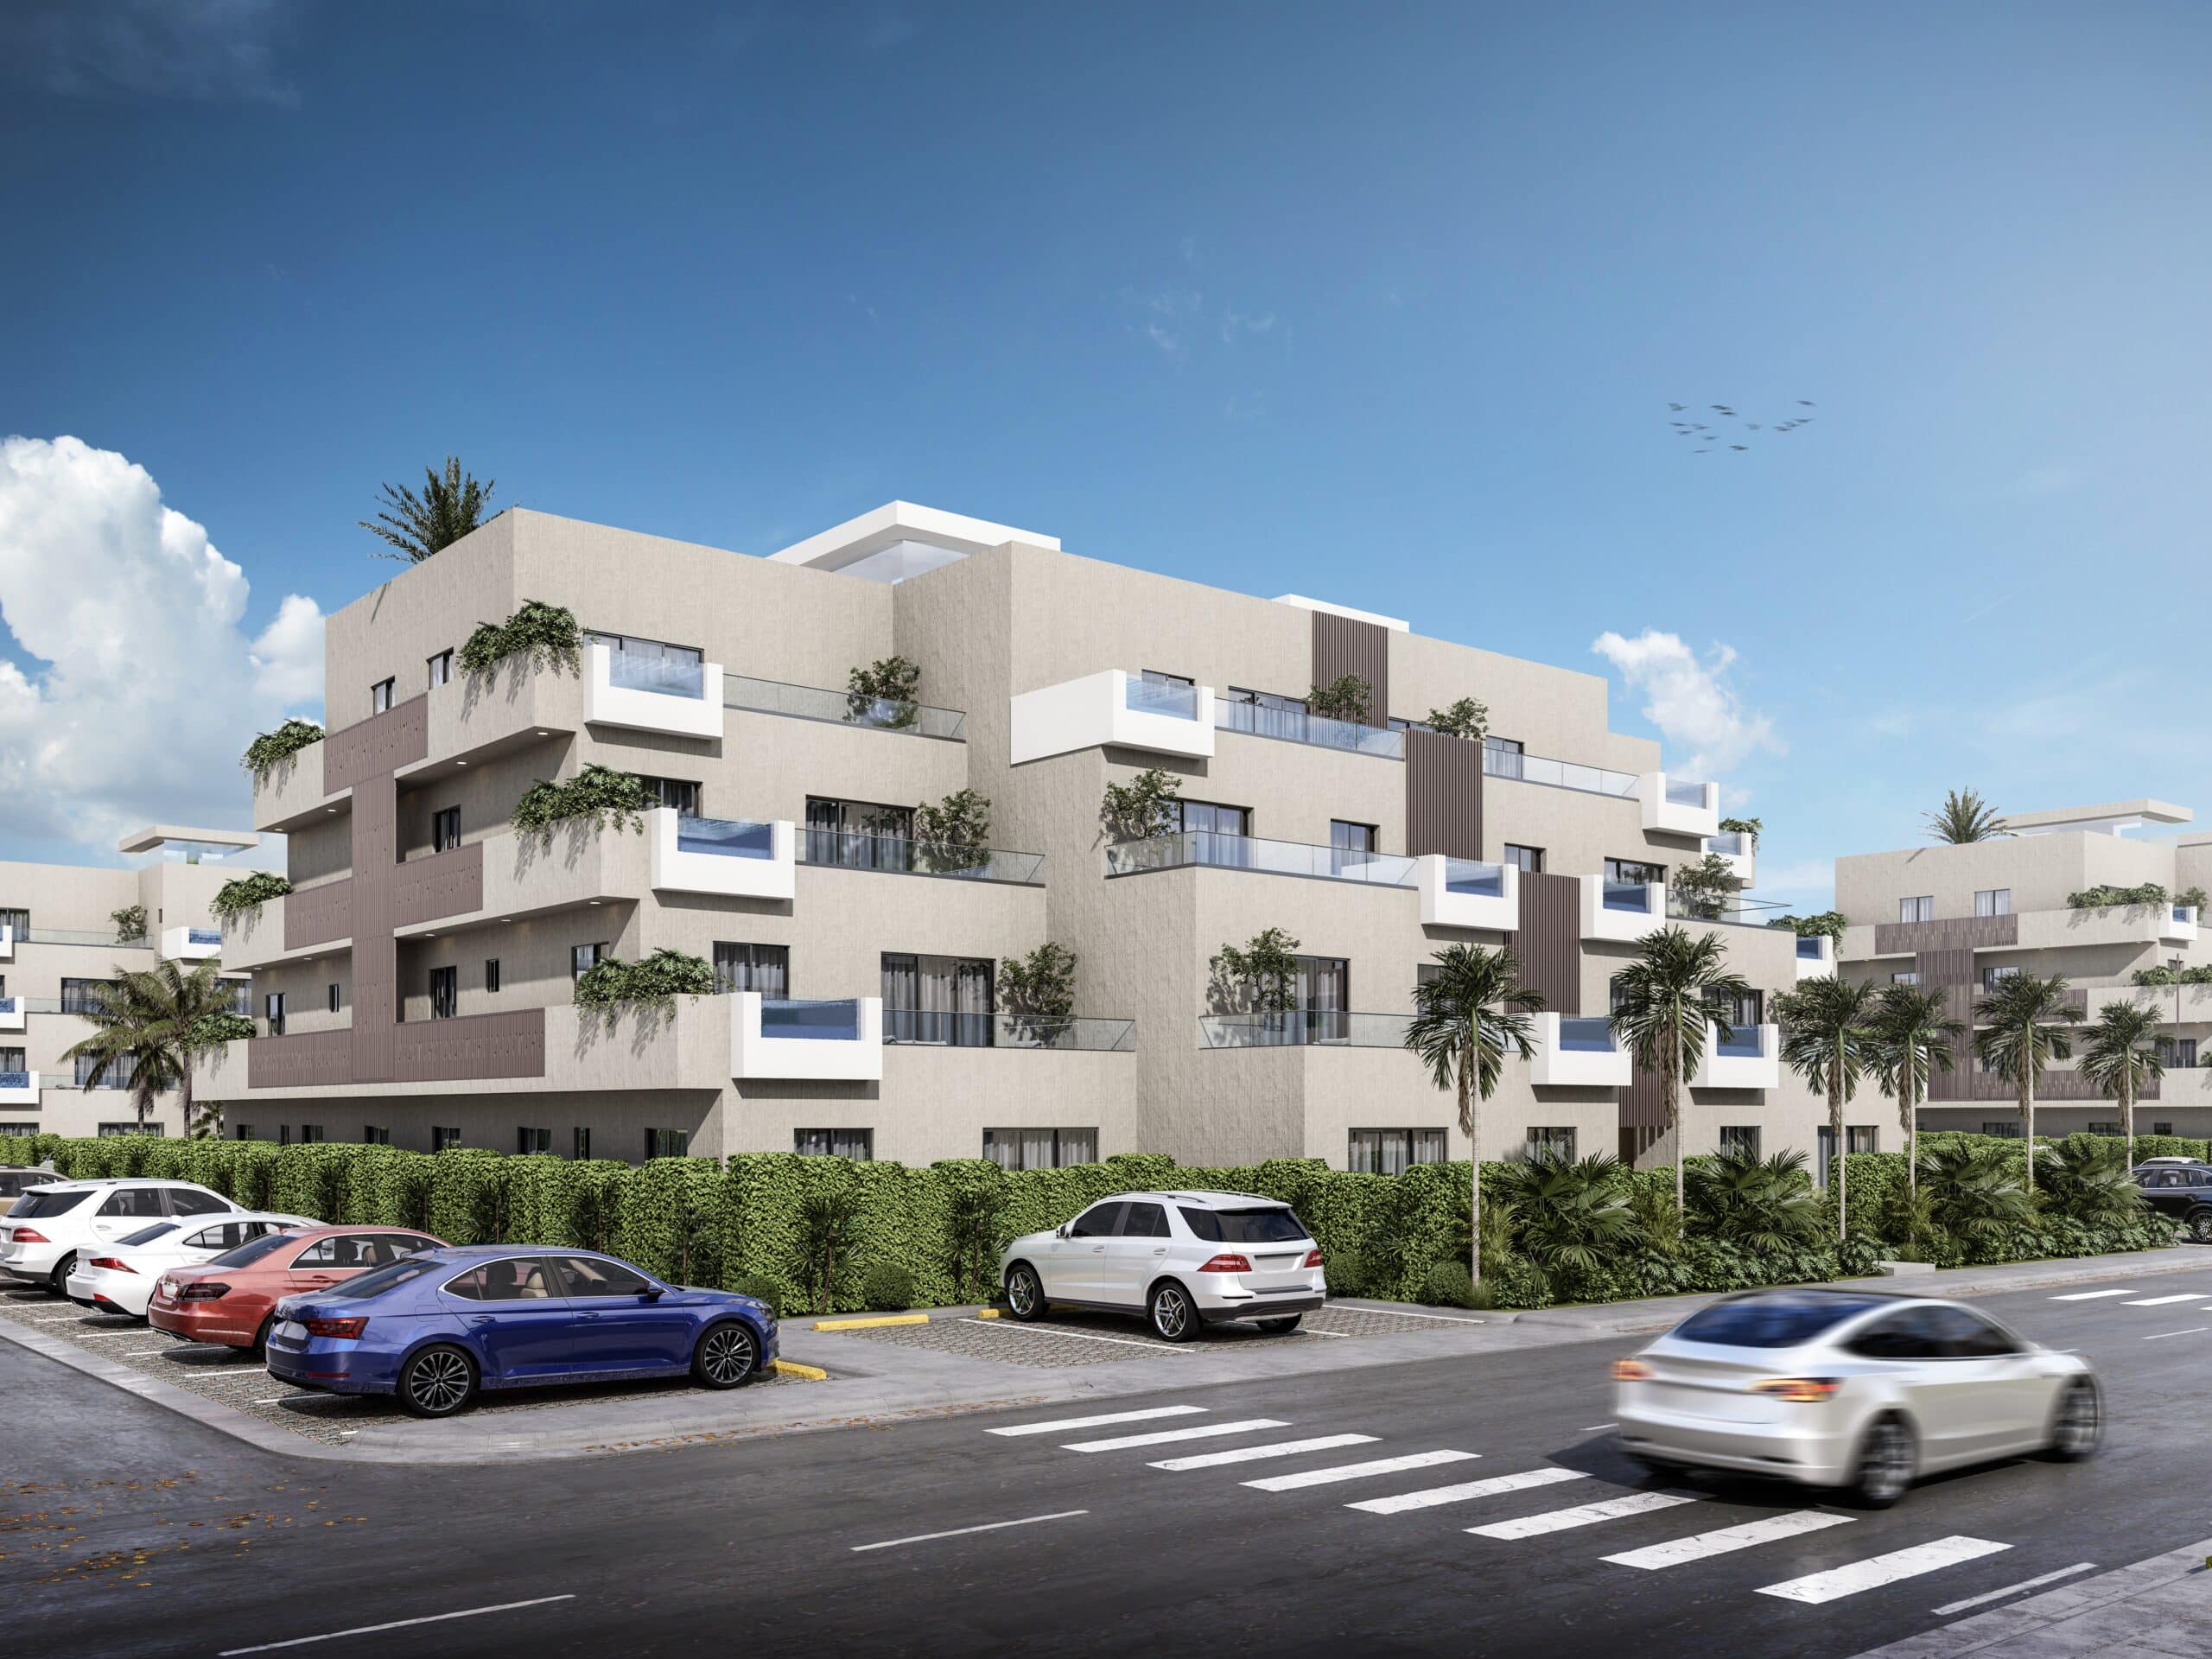 Hermoso proyecto de apartamentos y villas en Punta Cana, especificamente en el exclusivo complejo de Vista Cana.